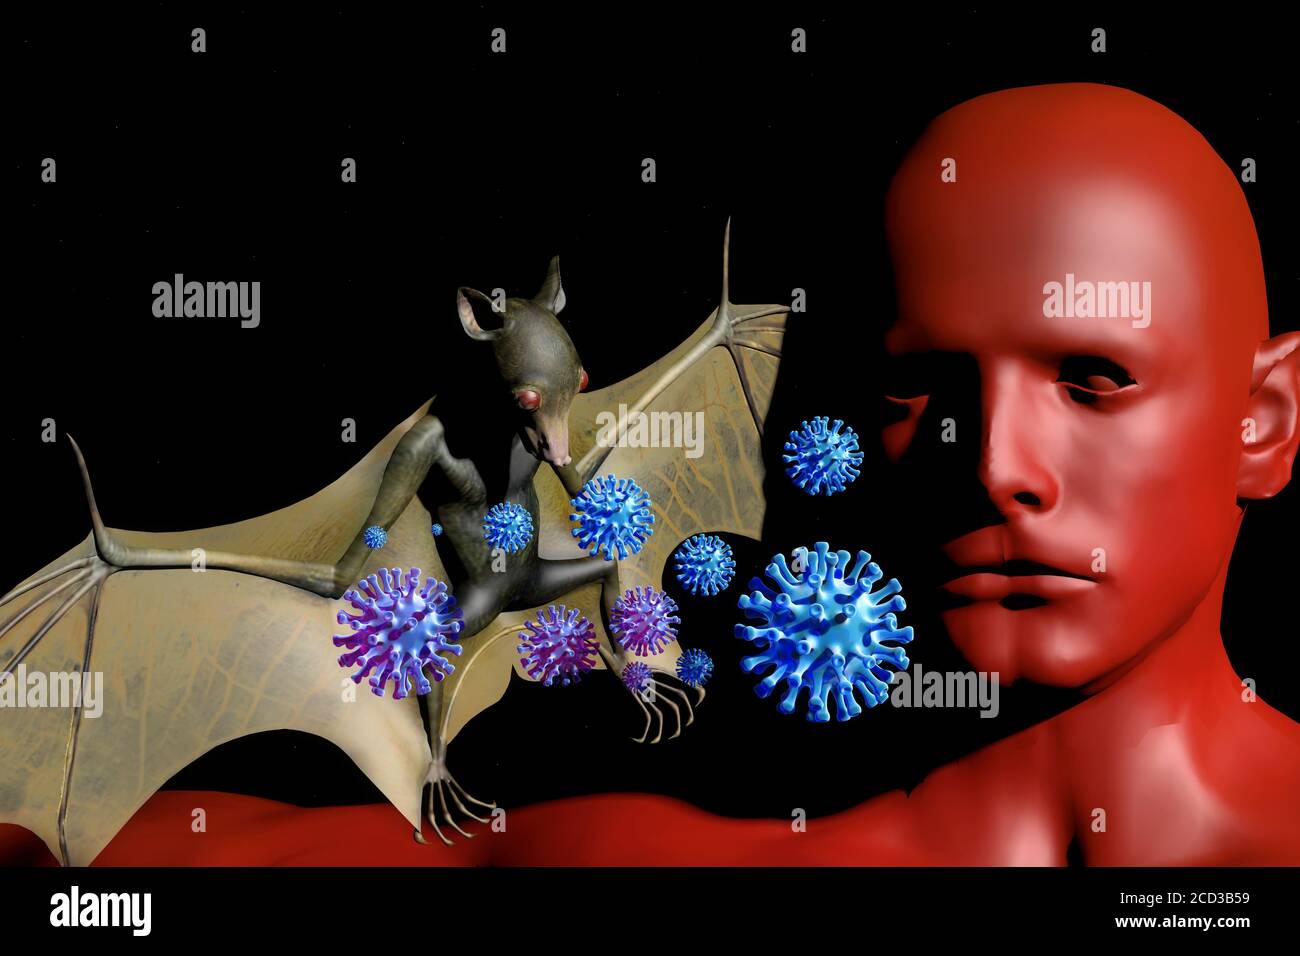 viele Viren wandern von der Tierwelt zum Menschen. Haeufig spielen Fledermaeuse dabei eine grosse Rolle - Symbolbild: CGI-Visualisierung: Coronavirus Stock Photo